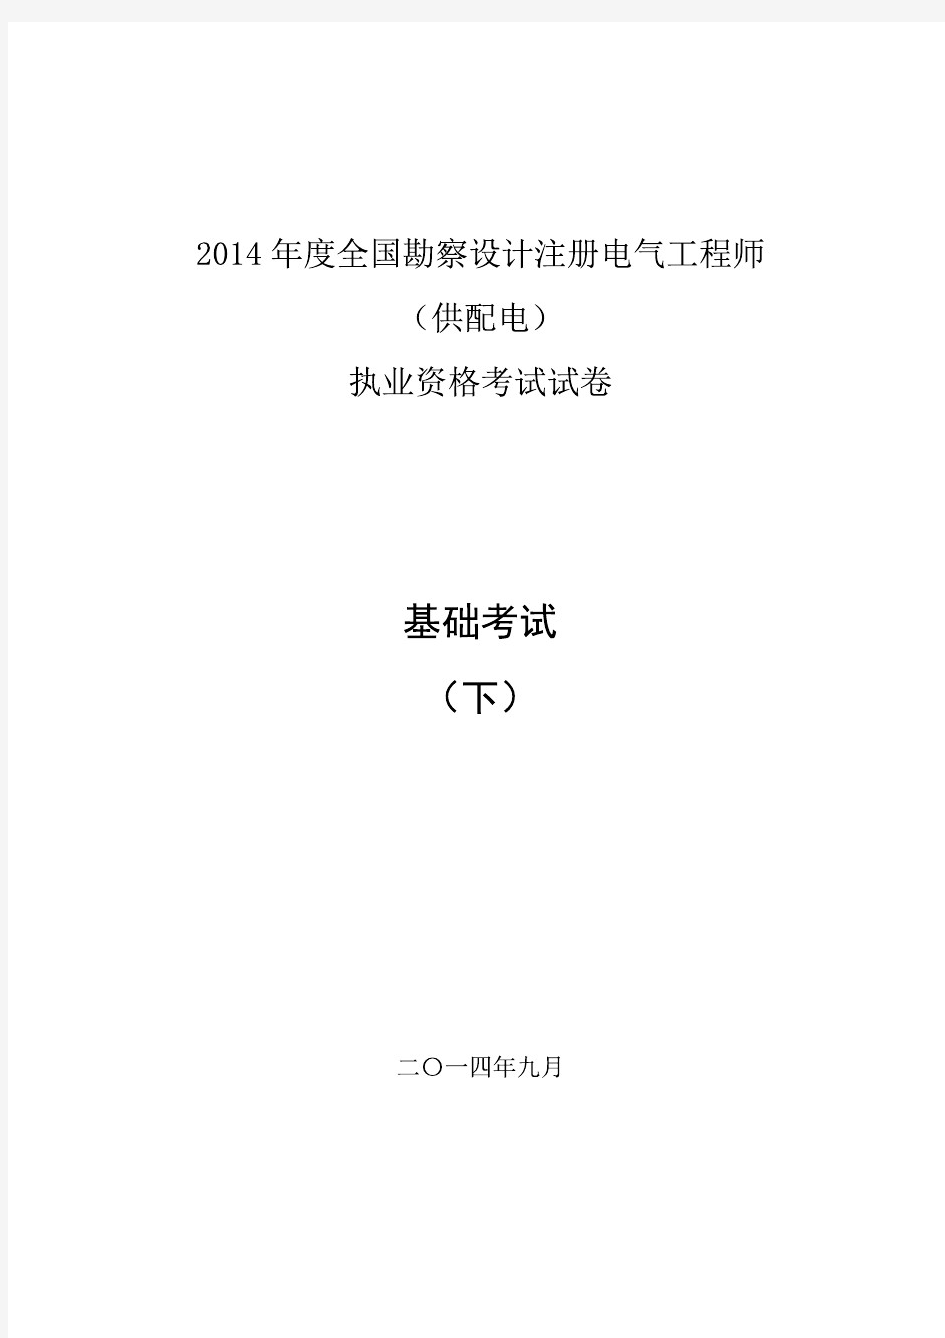 2014注册电气(供配电)专业基础空白真题(XY)